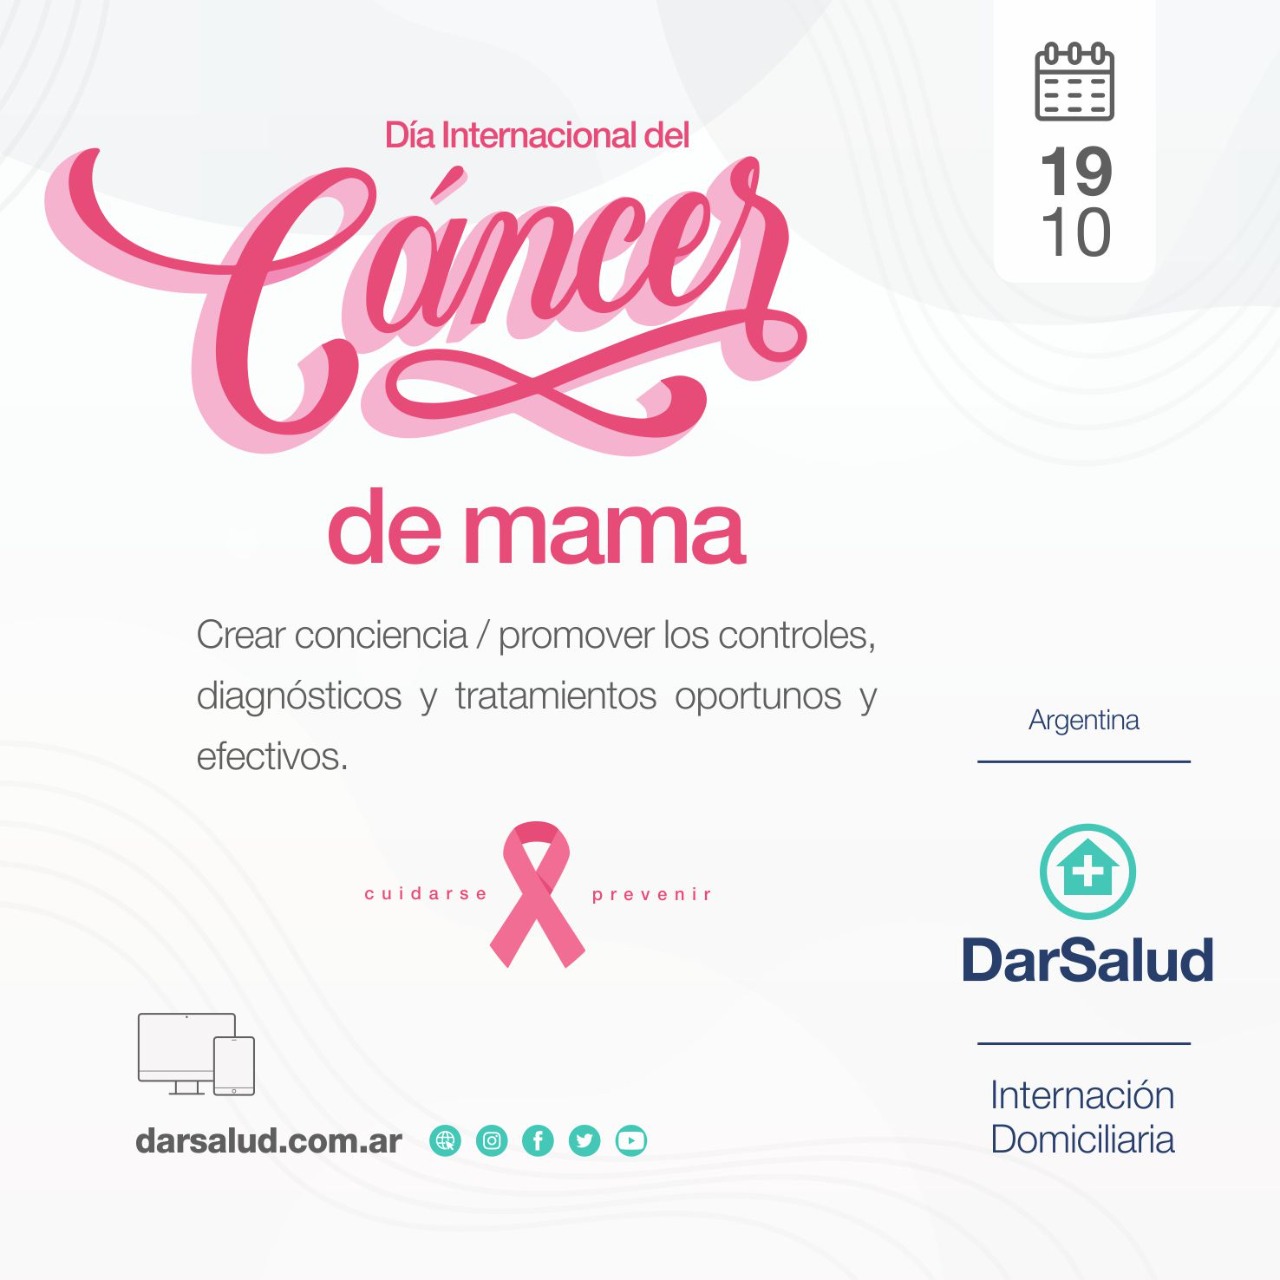 Cancer de mama